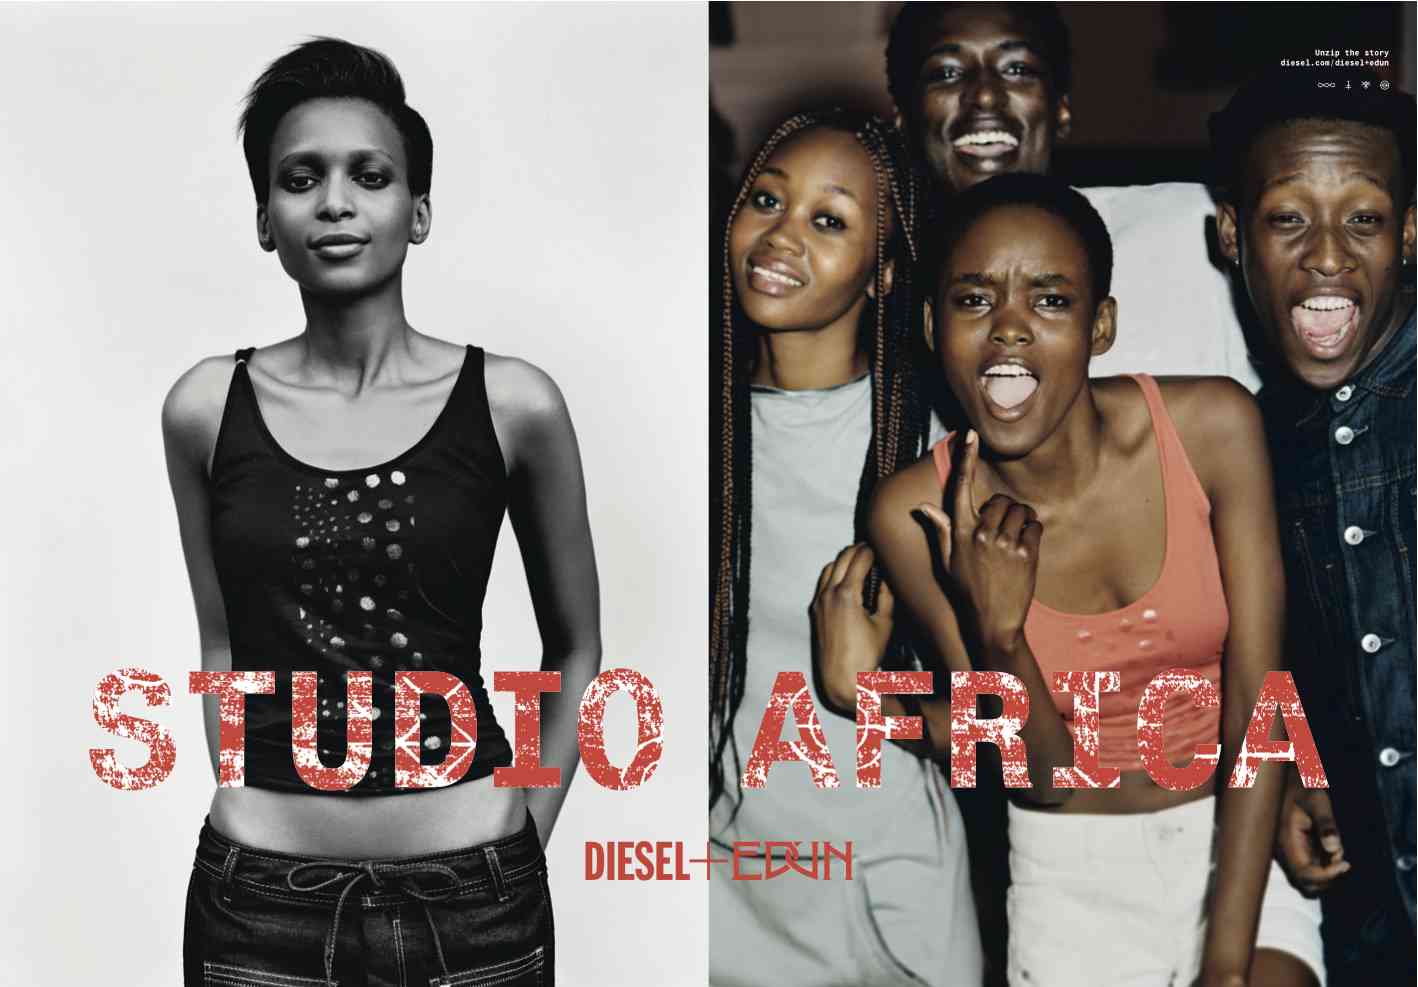 Diesel + Edun Studio Africa by Alasdair Mclellan